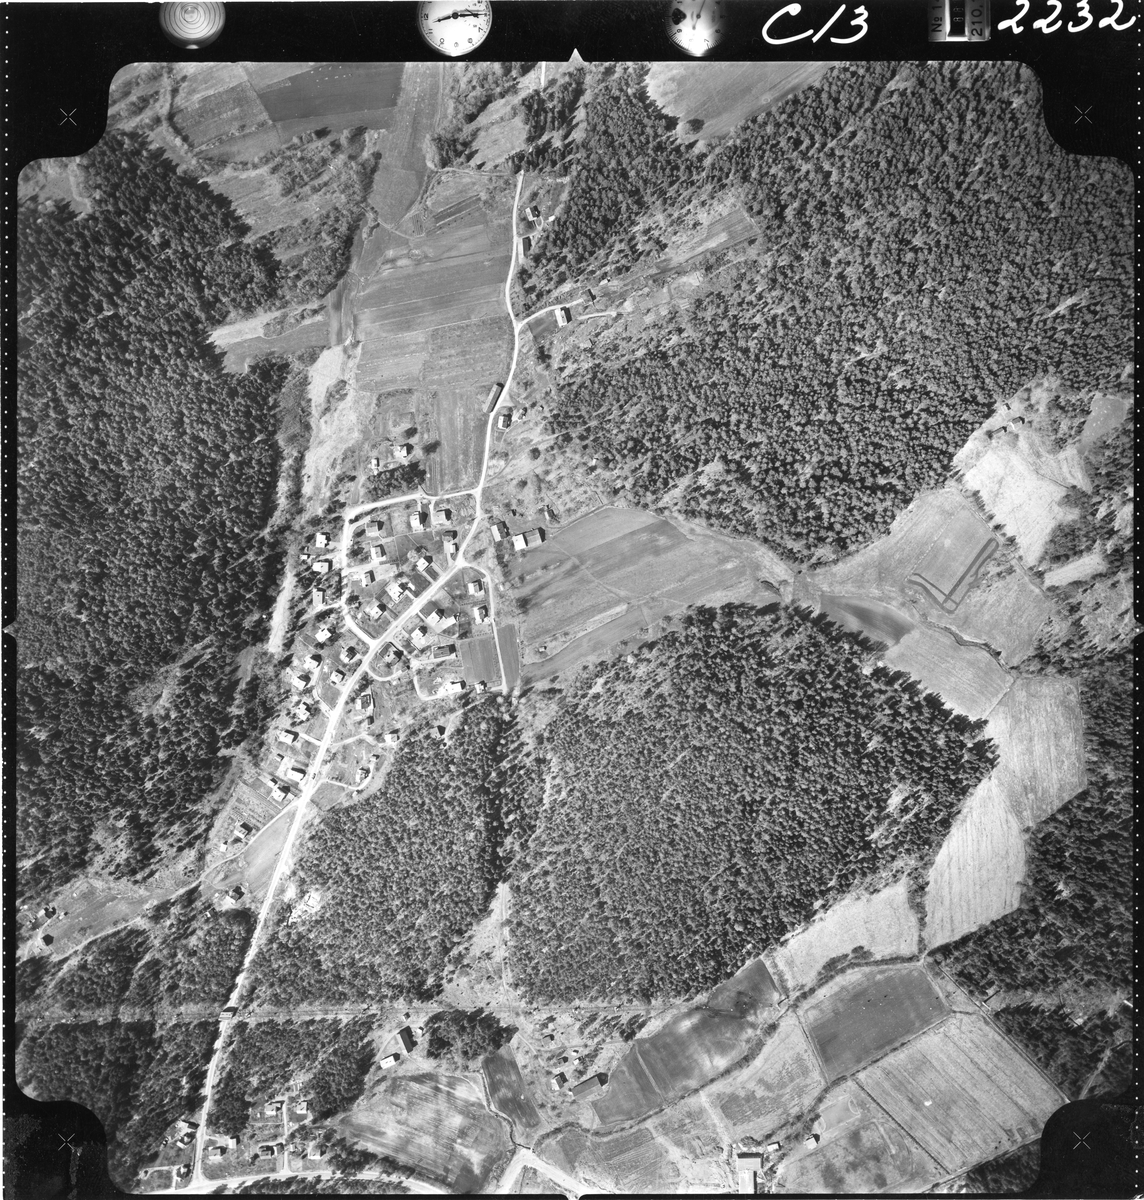 Flyfotoarkiv fra Fjellanger Widerøe AS, fra Porsgrunn Kommune, Eidangerhalvøya. Fotografert 16/05-1962. Oppdrag nr 2232, C13